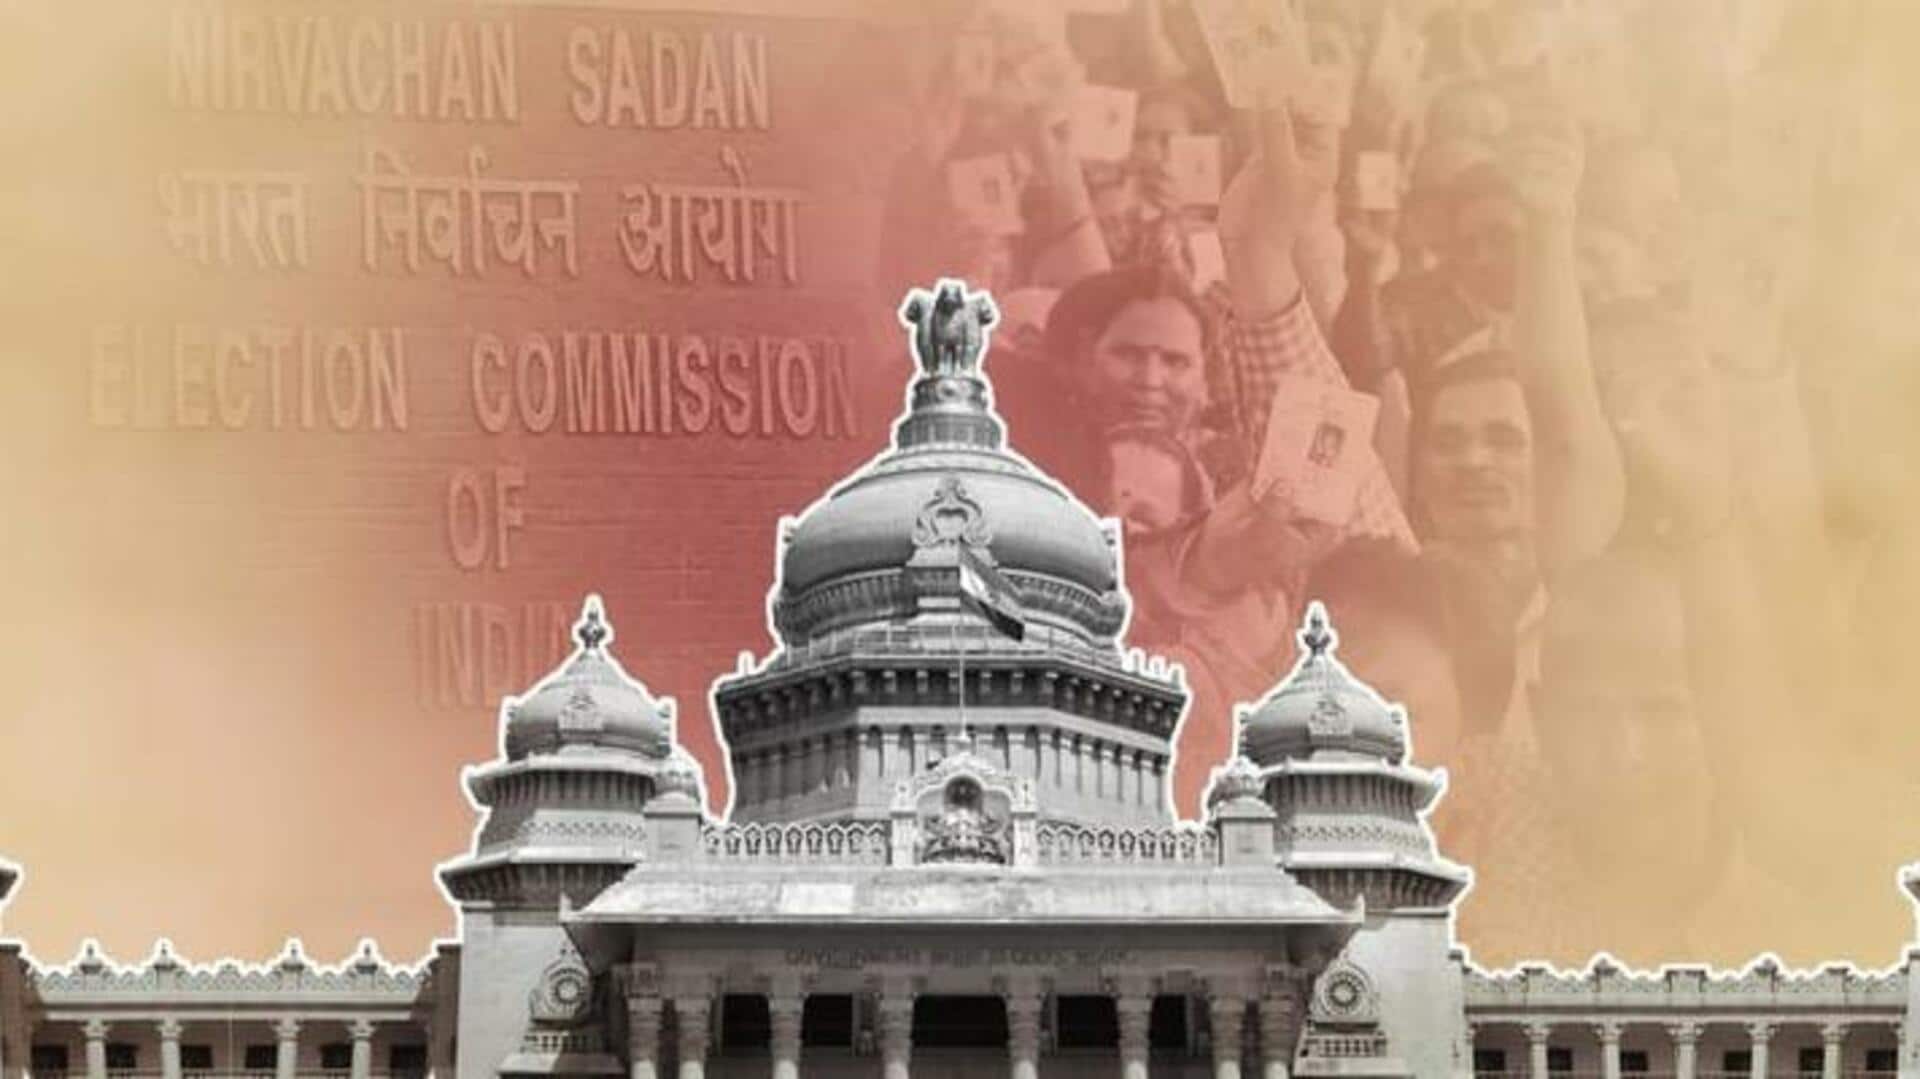 இன்று கர்நாடக தேர்தல் வாக்கெடுப்பு: எந்த கட்சி ஆட்சியைப் பிடிக்கும் 